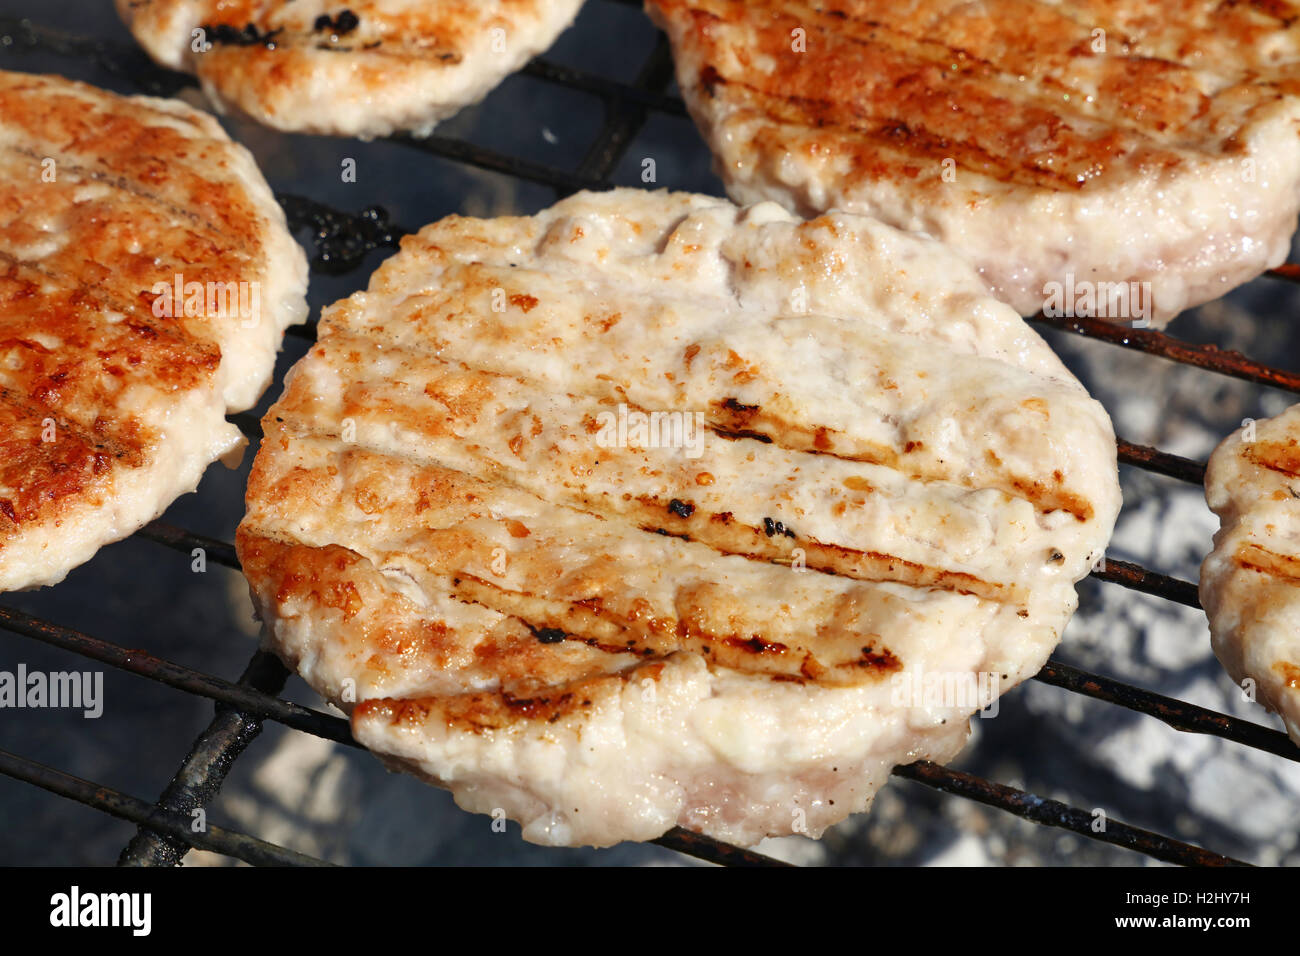 Pollo o tacchino carne di pollame barbecue hamburger grigliati per hamburger preparati sul fumo barbecue grill, close up Foto Stock